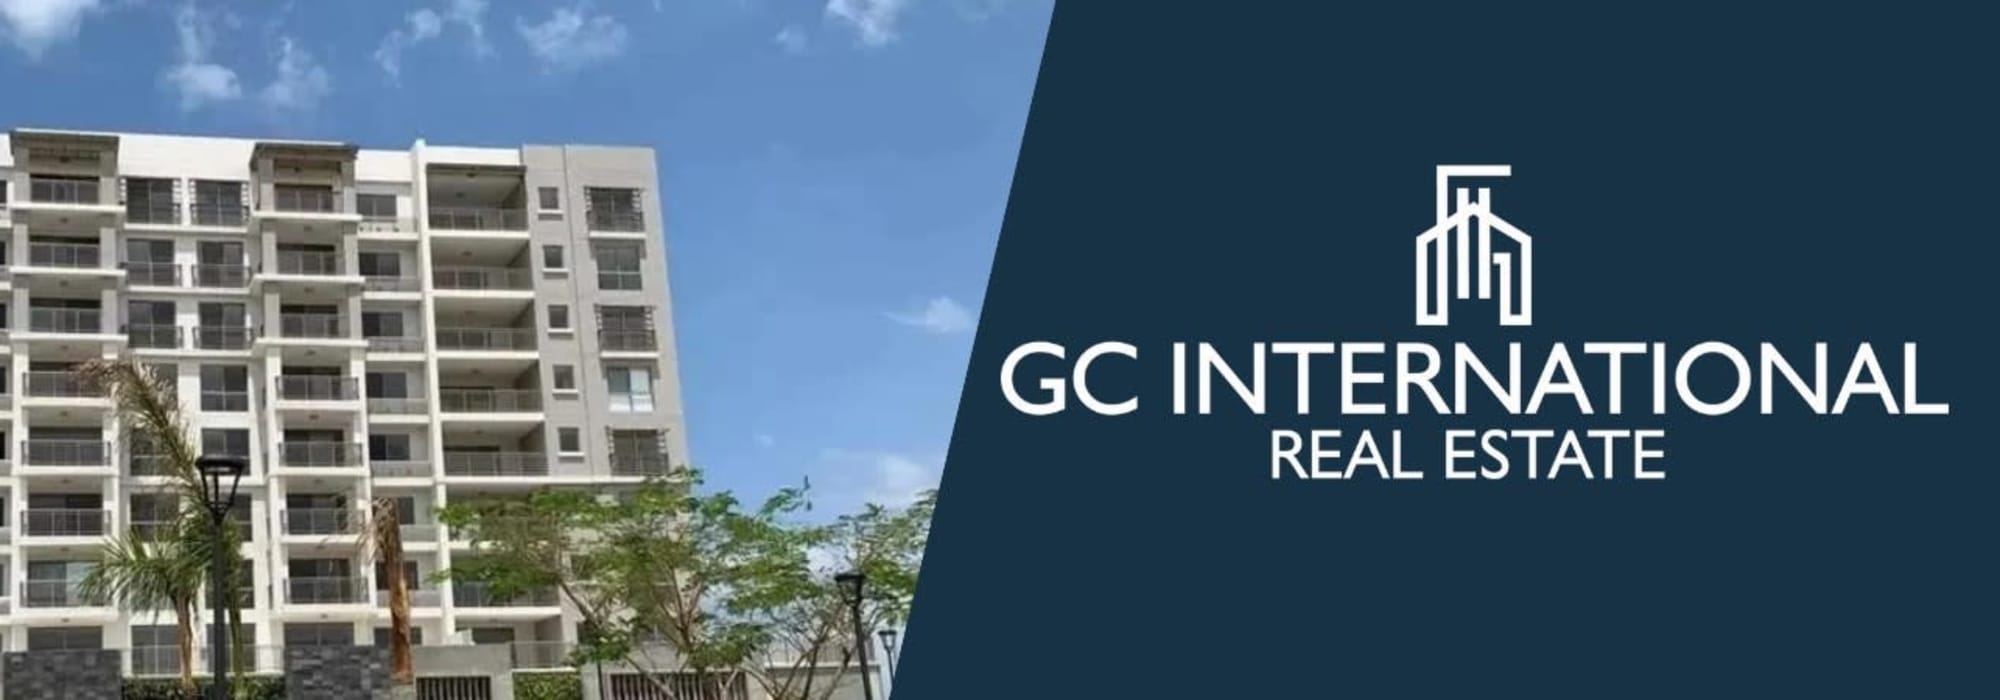 GC International Real Estate